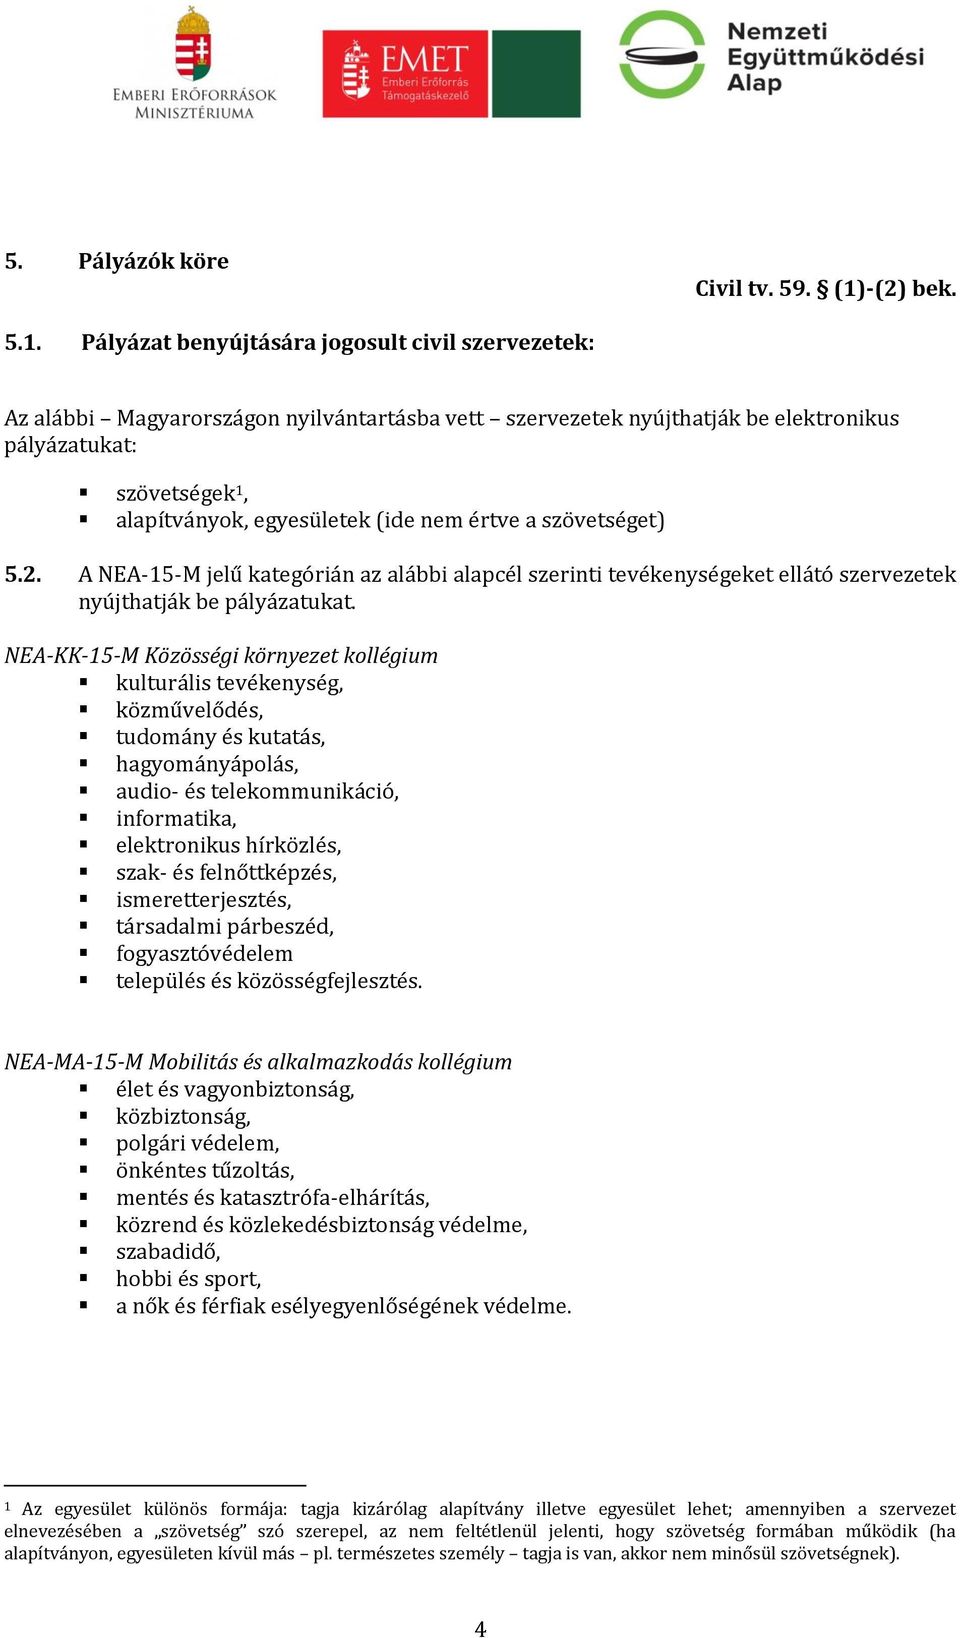 Pályázat benyújtására jogosult civil szervezetek: Az alábbi Magyarországon nyilvántartásba vett szervezetek nyújthatják be elektronikus pályázatukat: szövetségek 1, alapítványok, egyesületek (ide nem